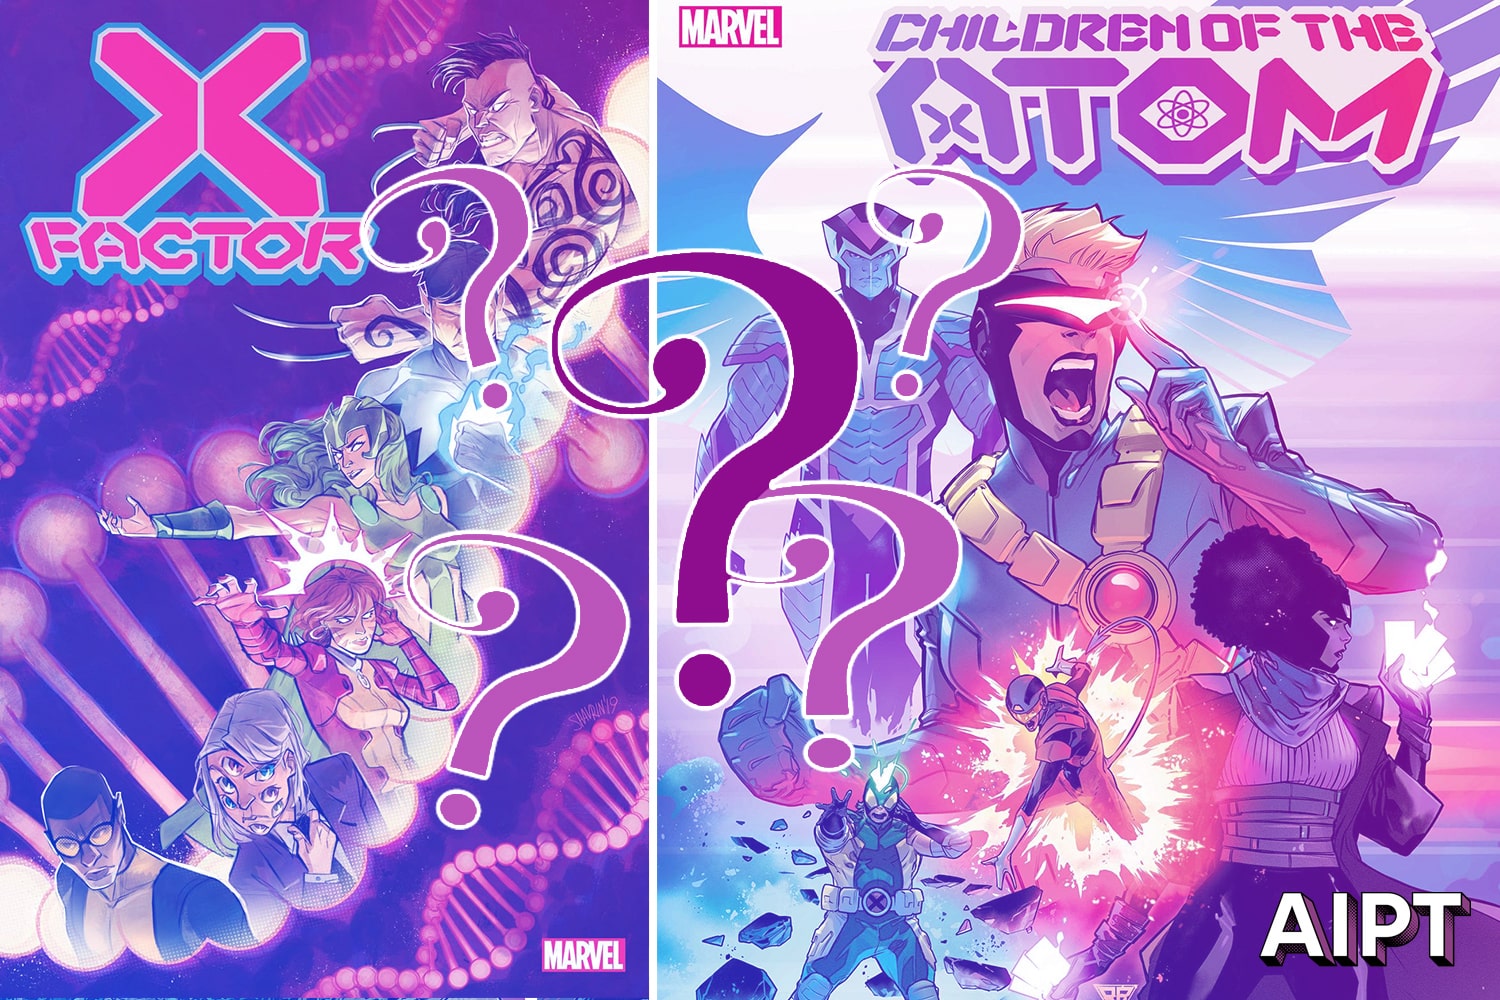 X-Men Senior Editor Jordan D. White reveals 'Children of the Atom' is coming